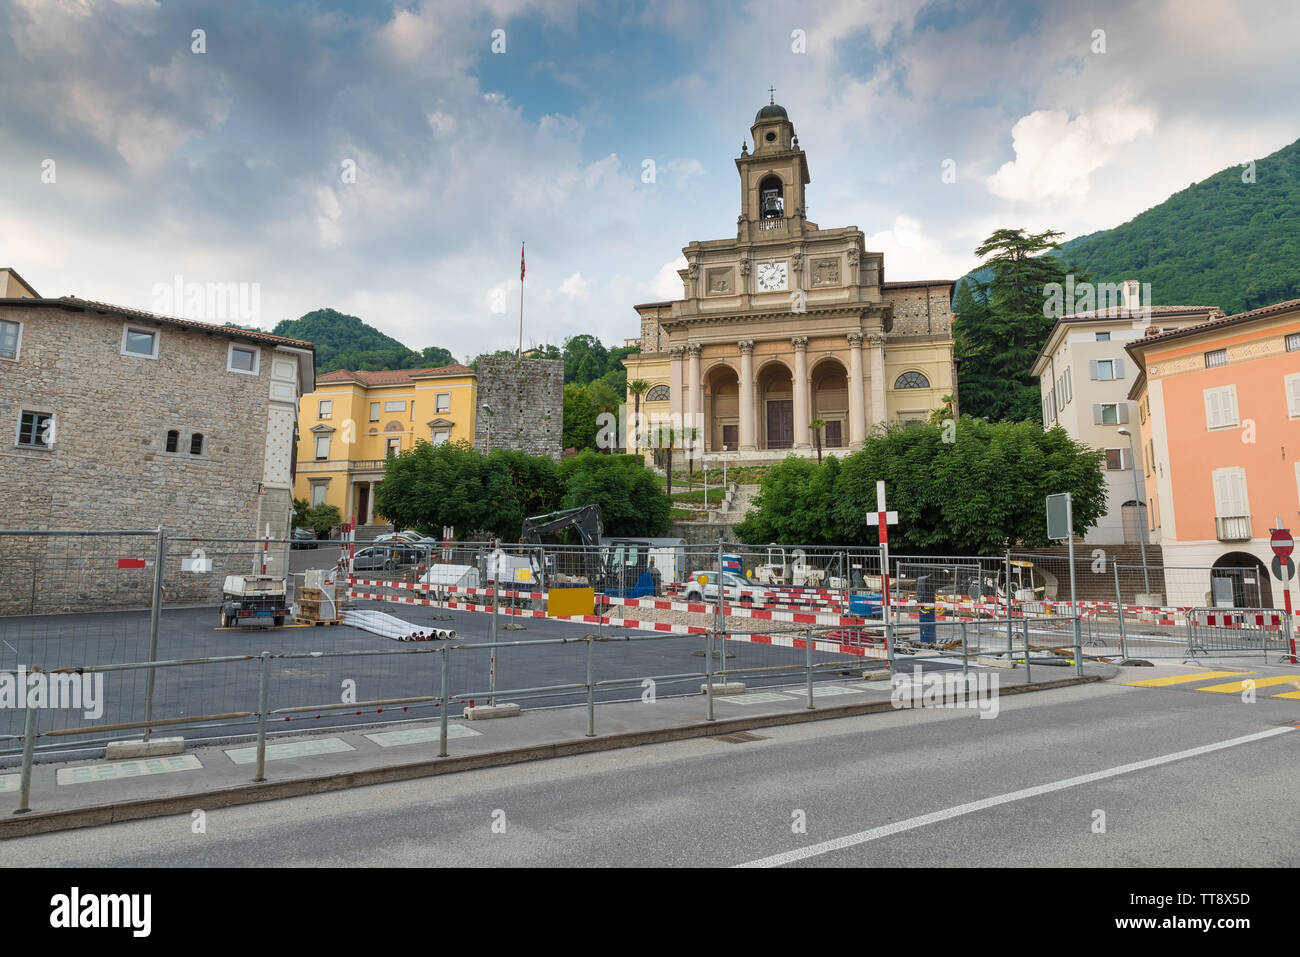 Urbanisierung arbeitet im historischen Zentrum von einer Schweizer Stadt, Mendrisio Stockfoto